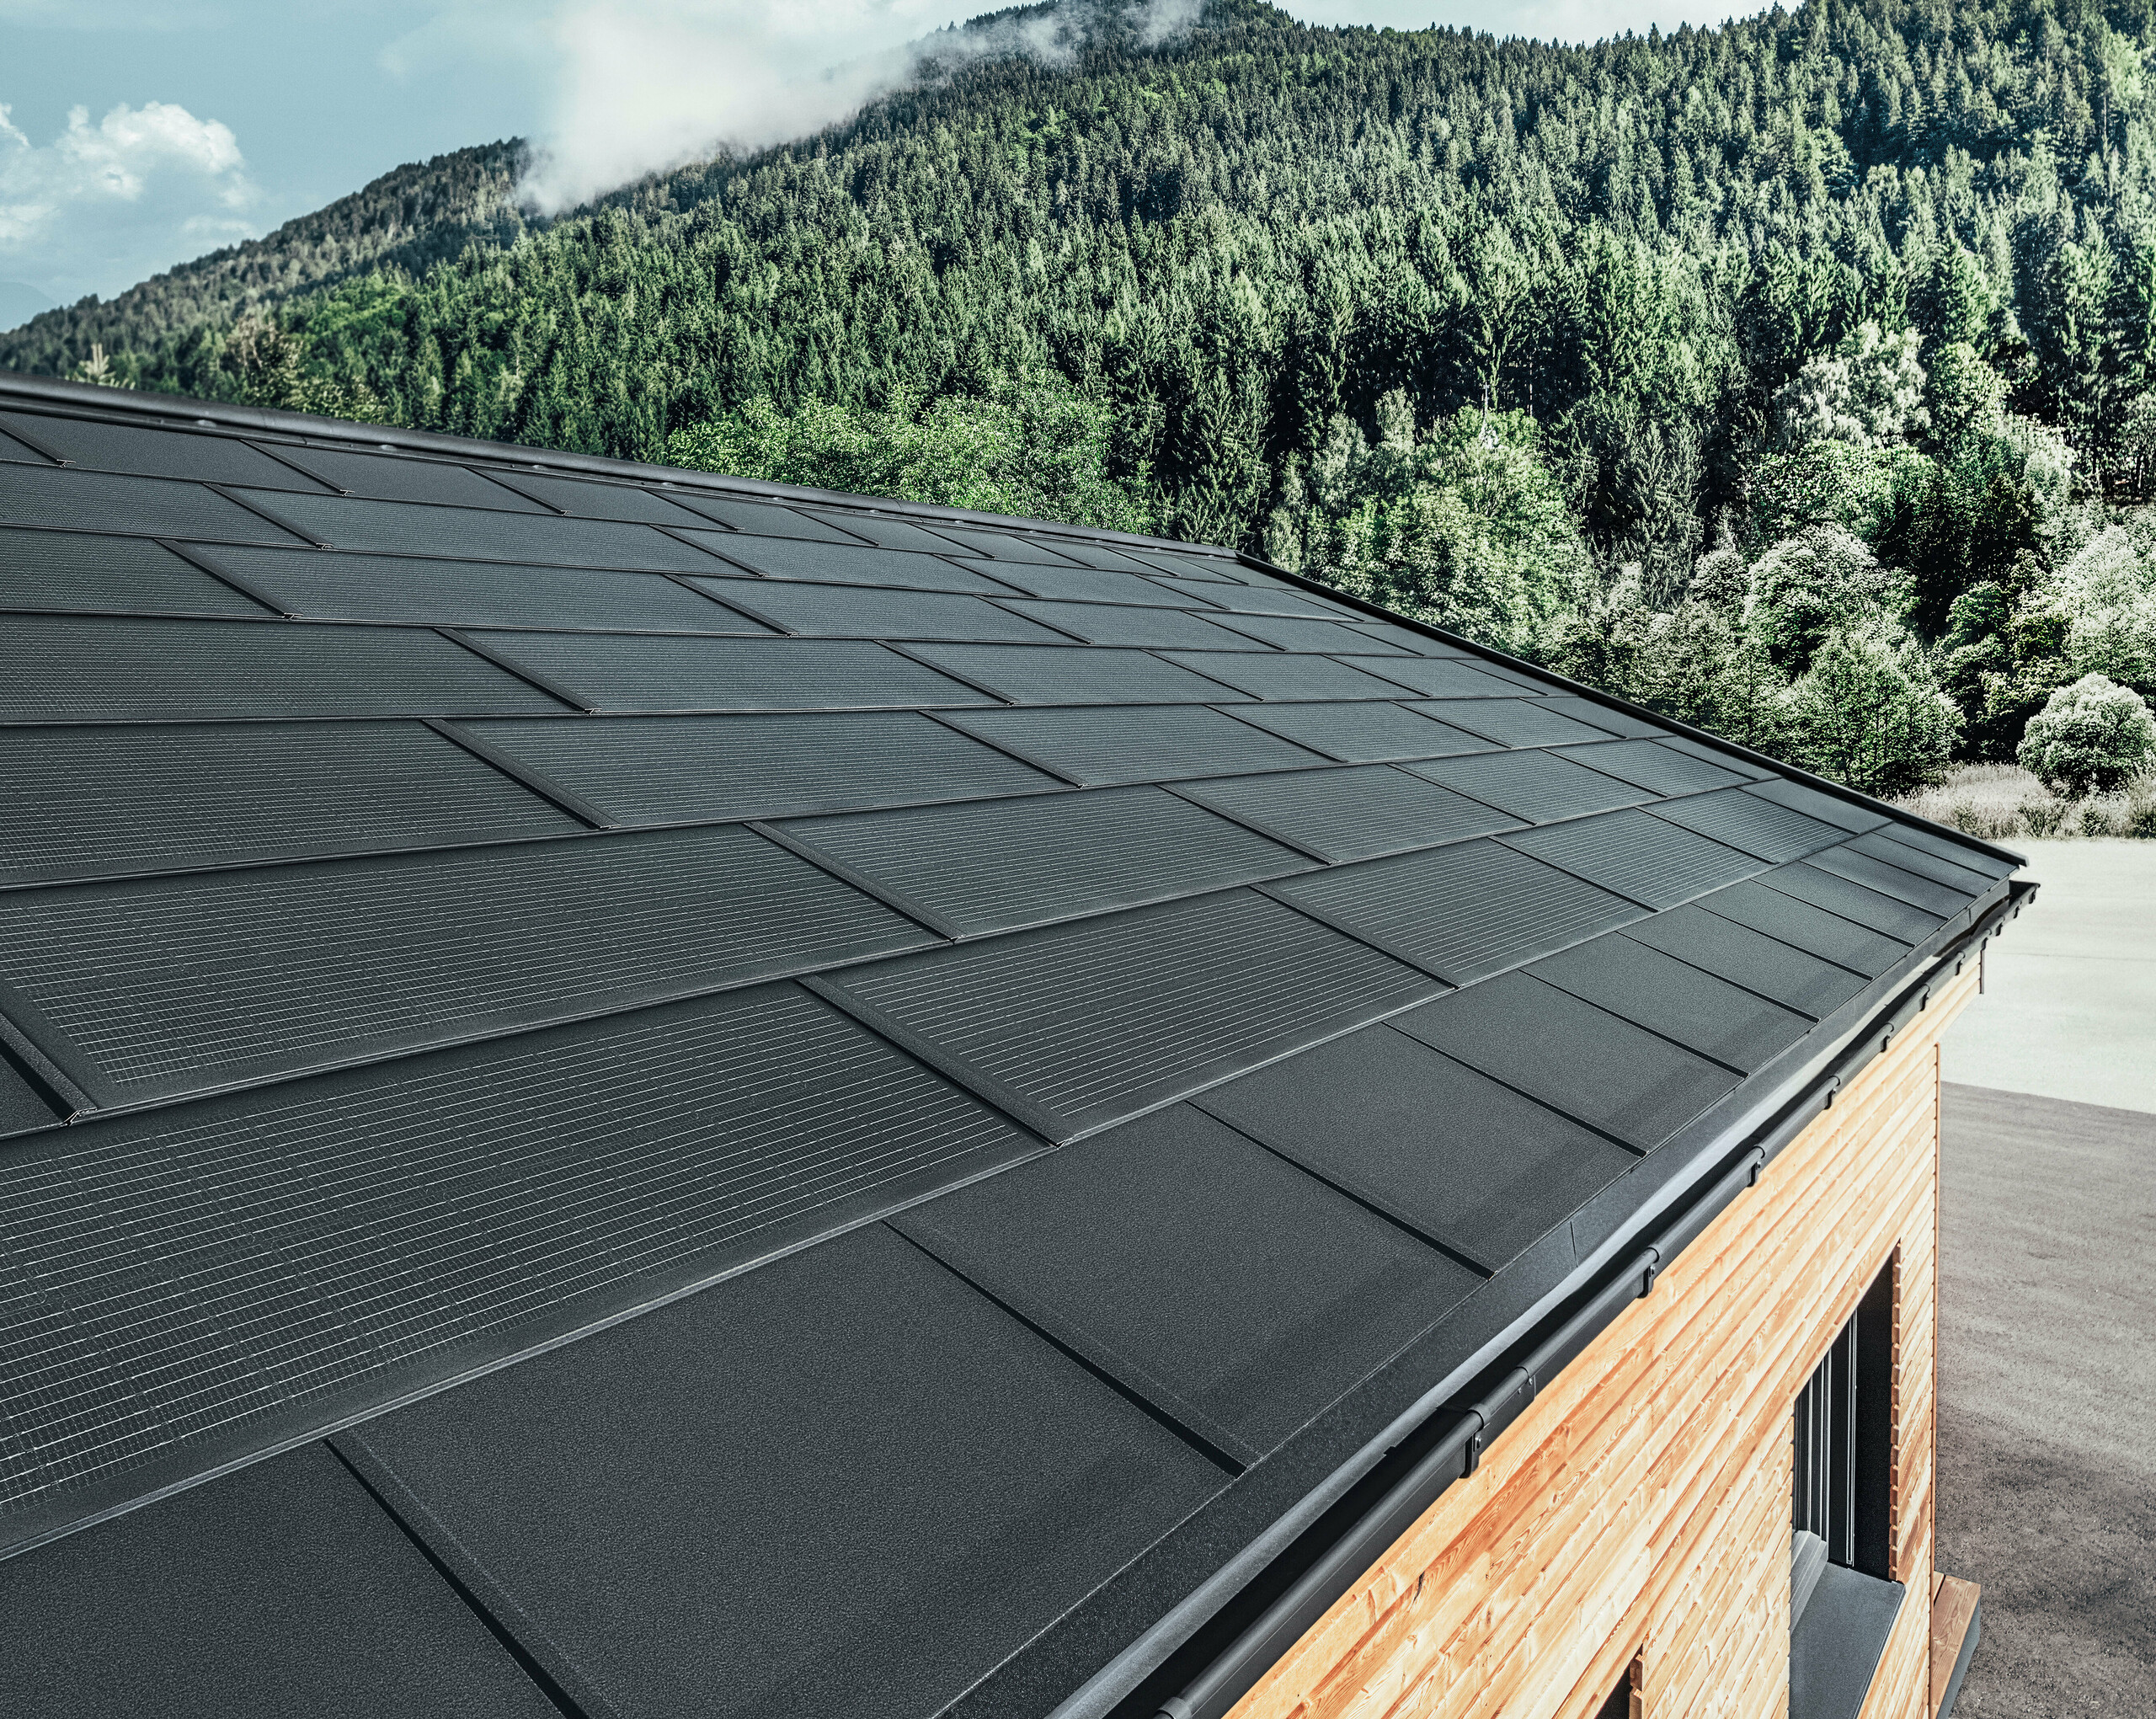 PREFA Solardachplatte in großer Ausführung kombiniert mit der Dachplatte R.16 in Schwarz, Kastenrinne und Lärchenholz-Fassade